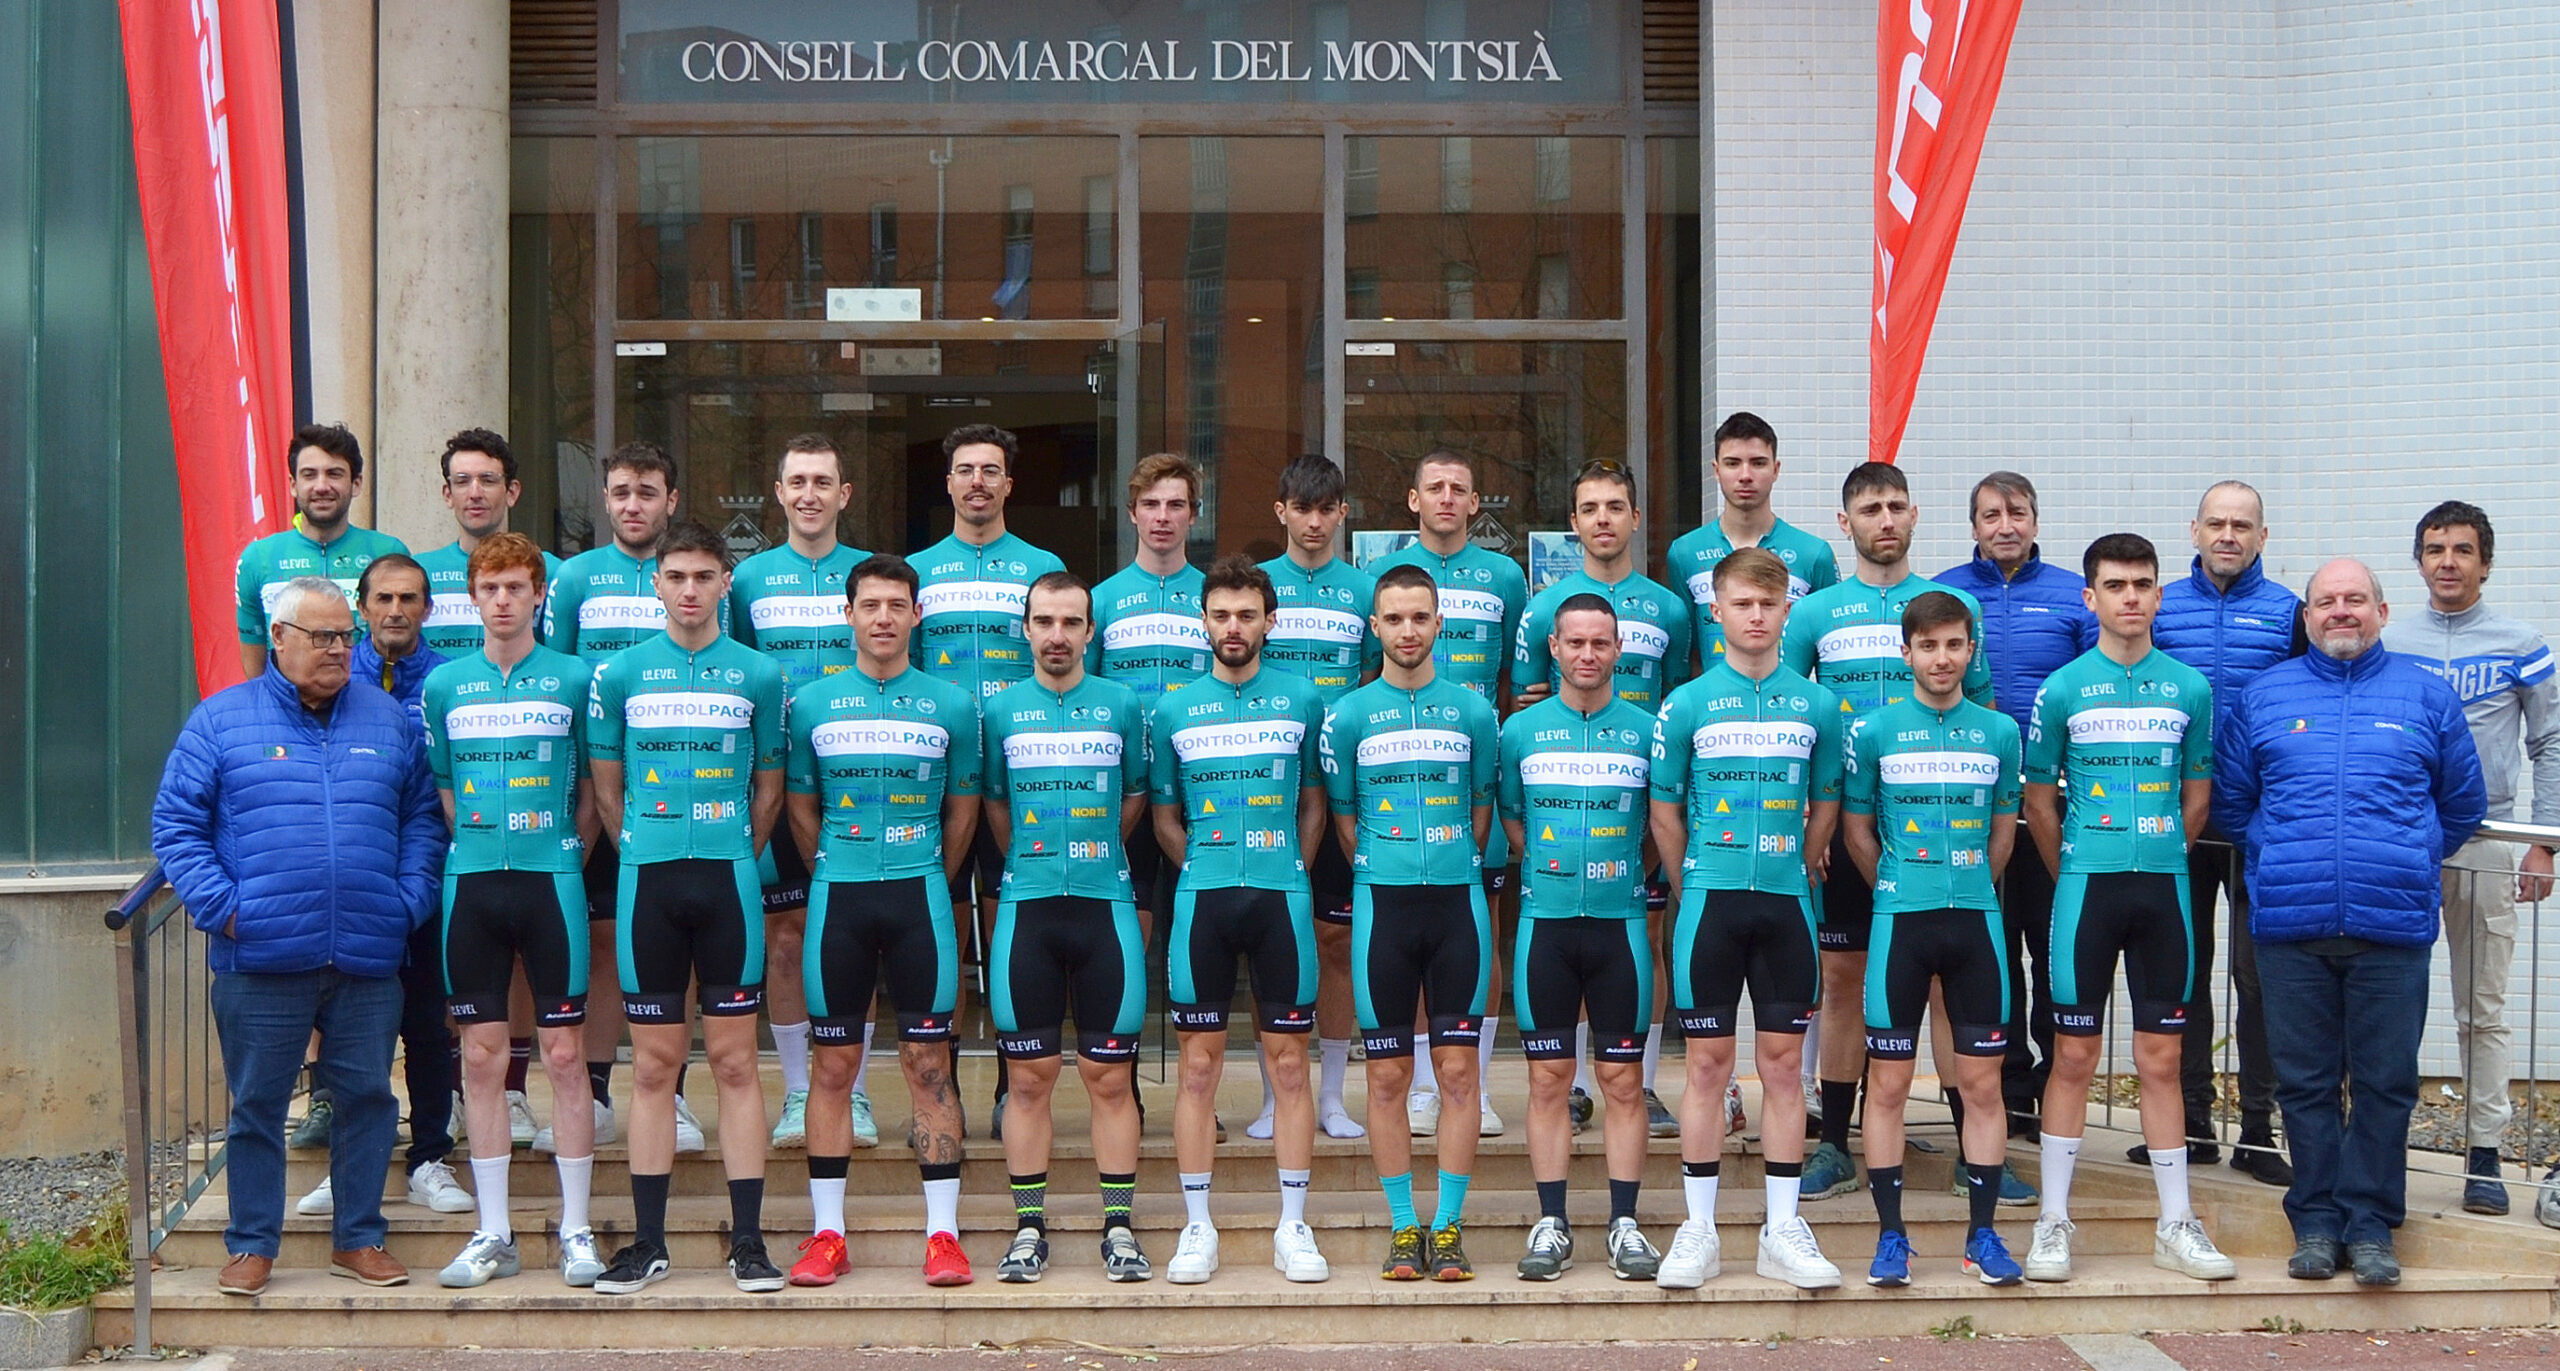 Presentación del equipo ciclista Controlpack, en el "Consell Comarcal del Montsià". 